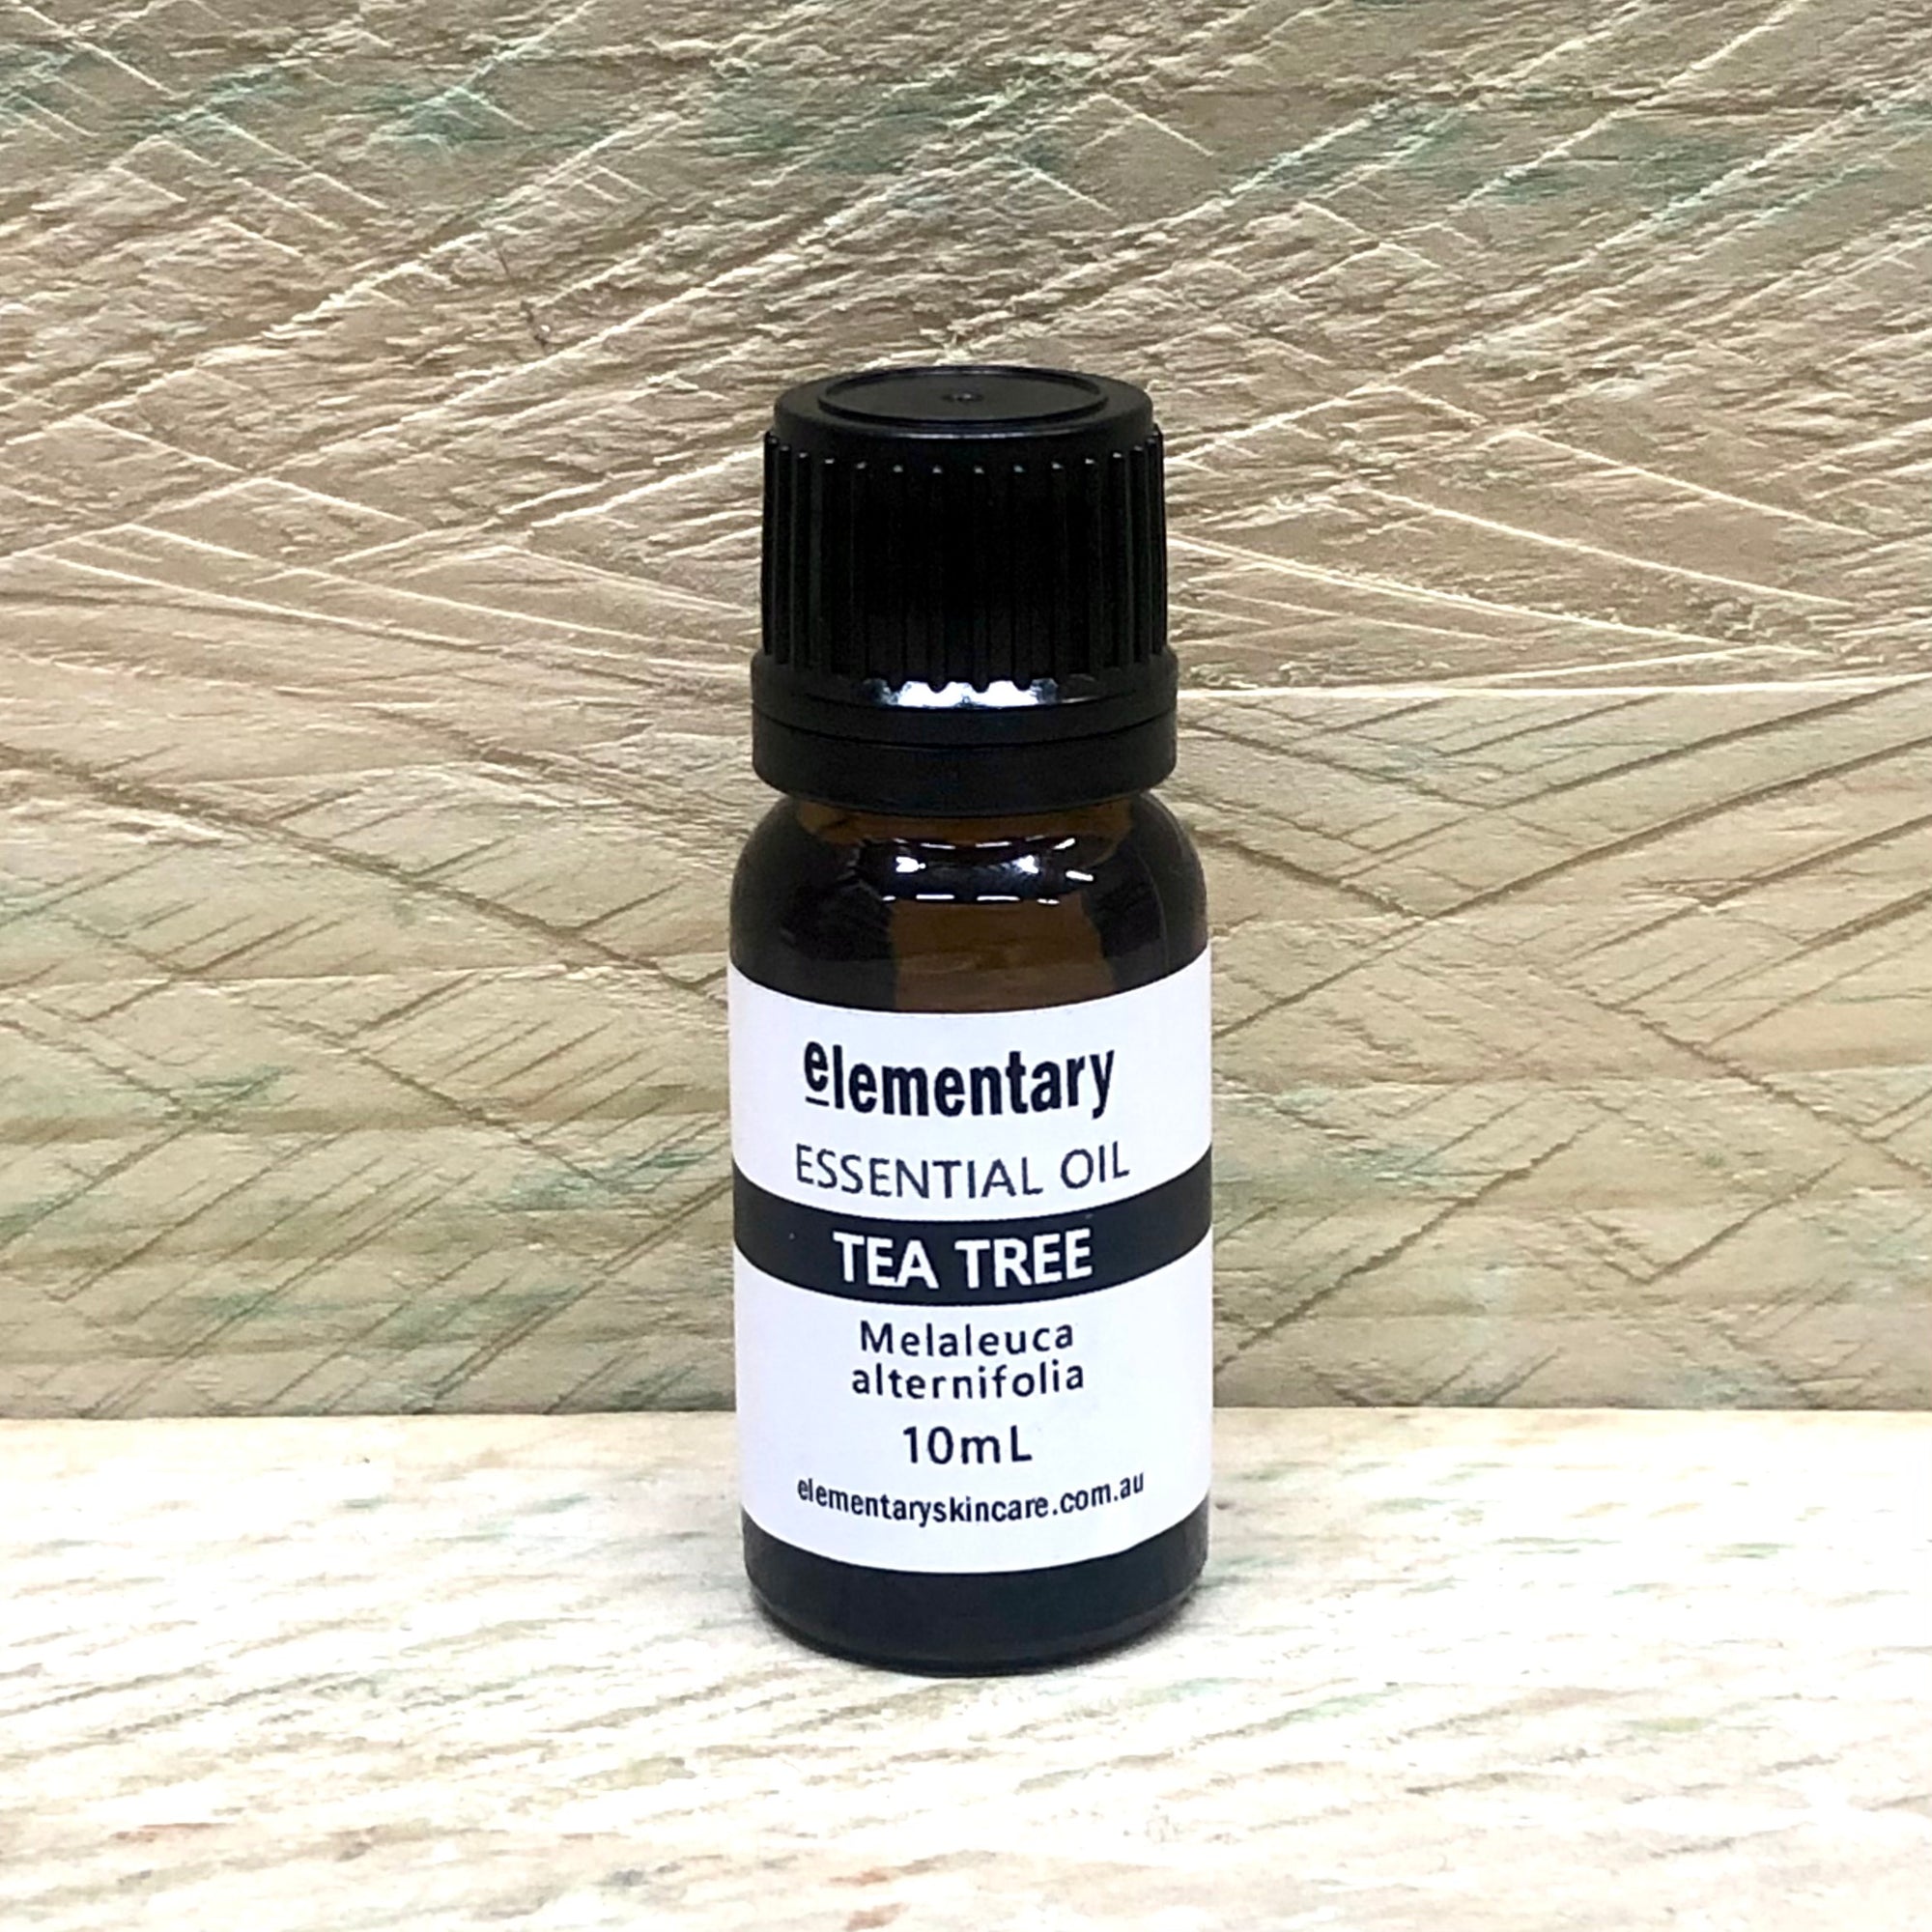 Elementary essential oil Tea Tree